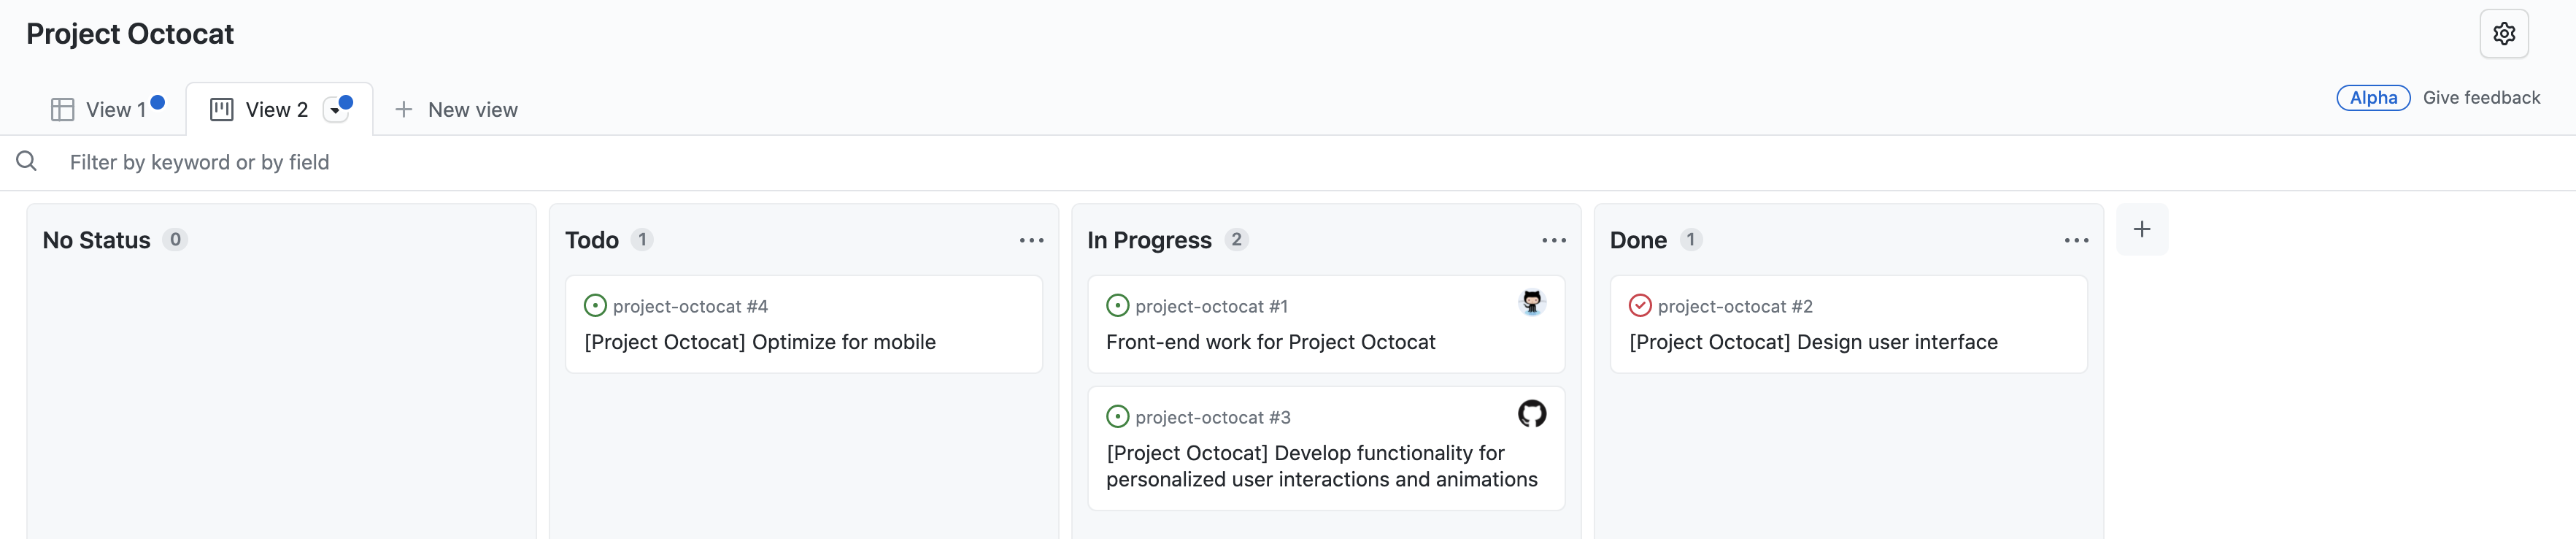 Снимок экрана: представление доски проекта "Project Octocat" с проблемами, упорядоченными по столбцам "Нет состояния", "Todo", "Выполняется" и "Готово".